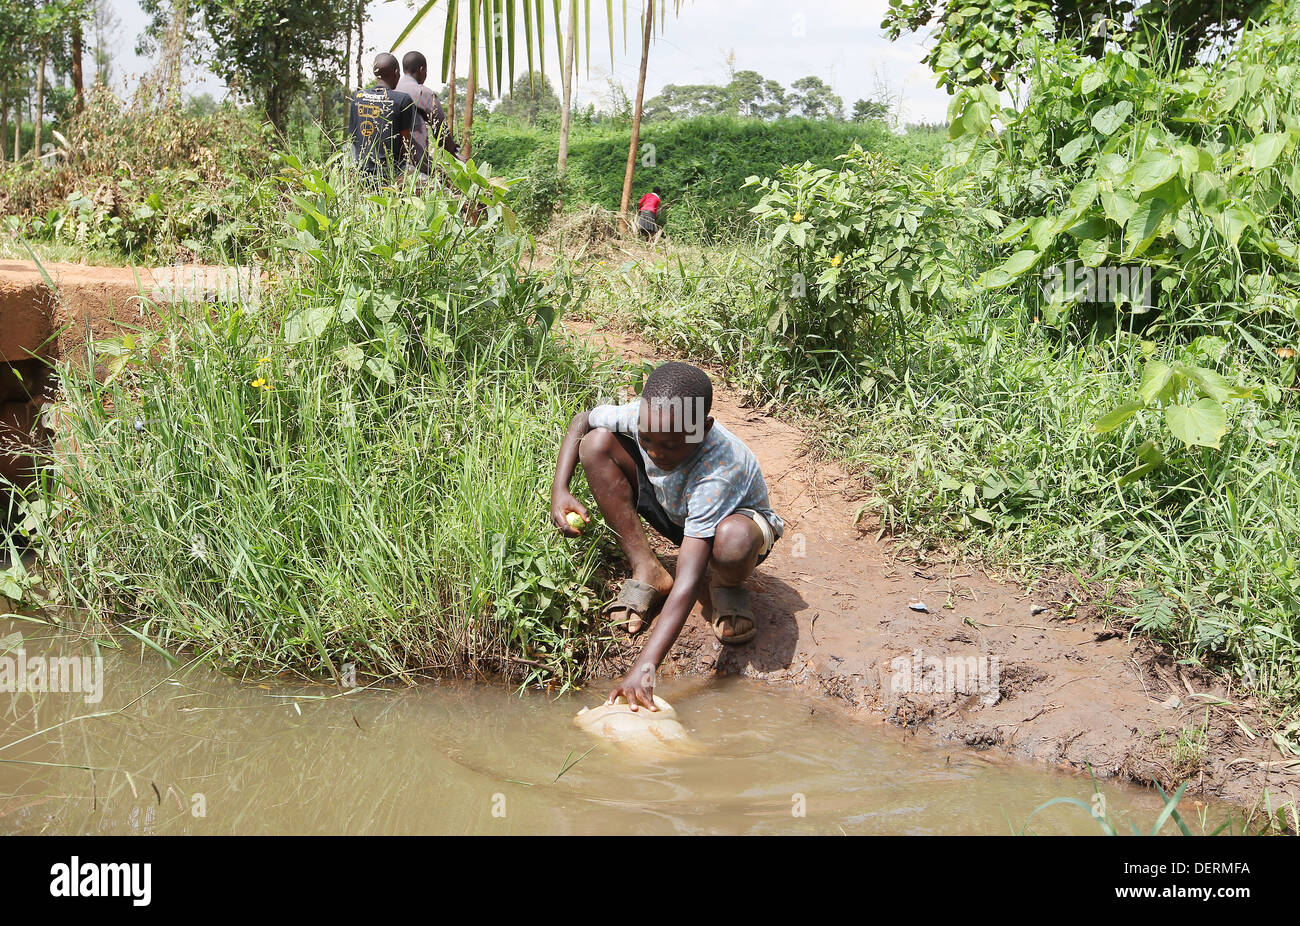 Ein kleiner Junge sammelt schmutziges Wasser aus einem Fluss im Luwero Distrikt von Uganda. Stockfoto